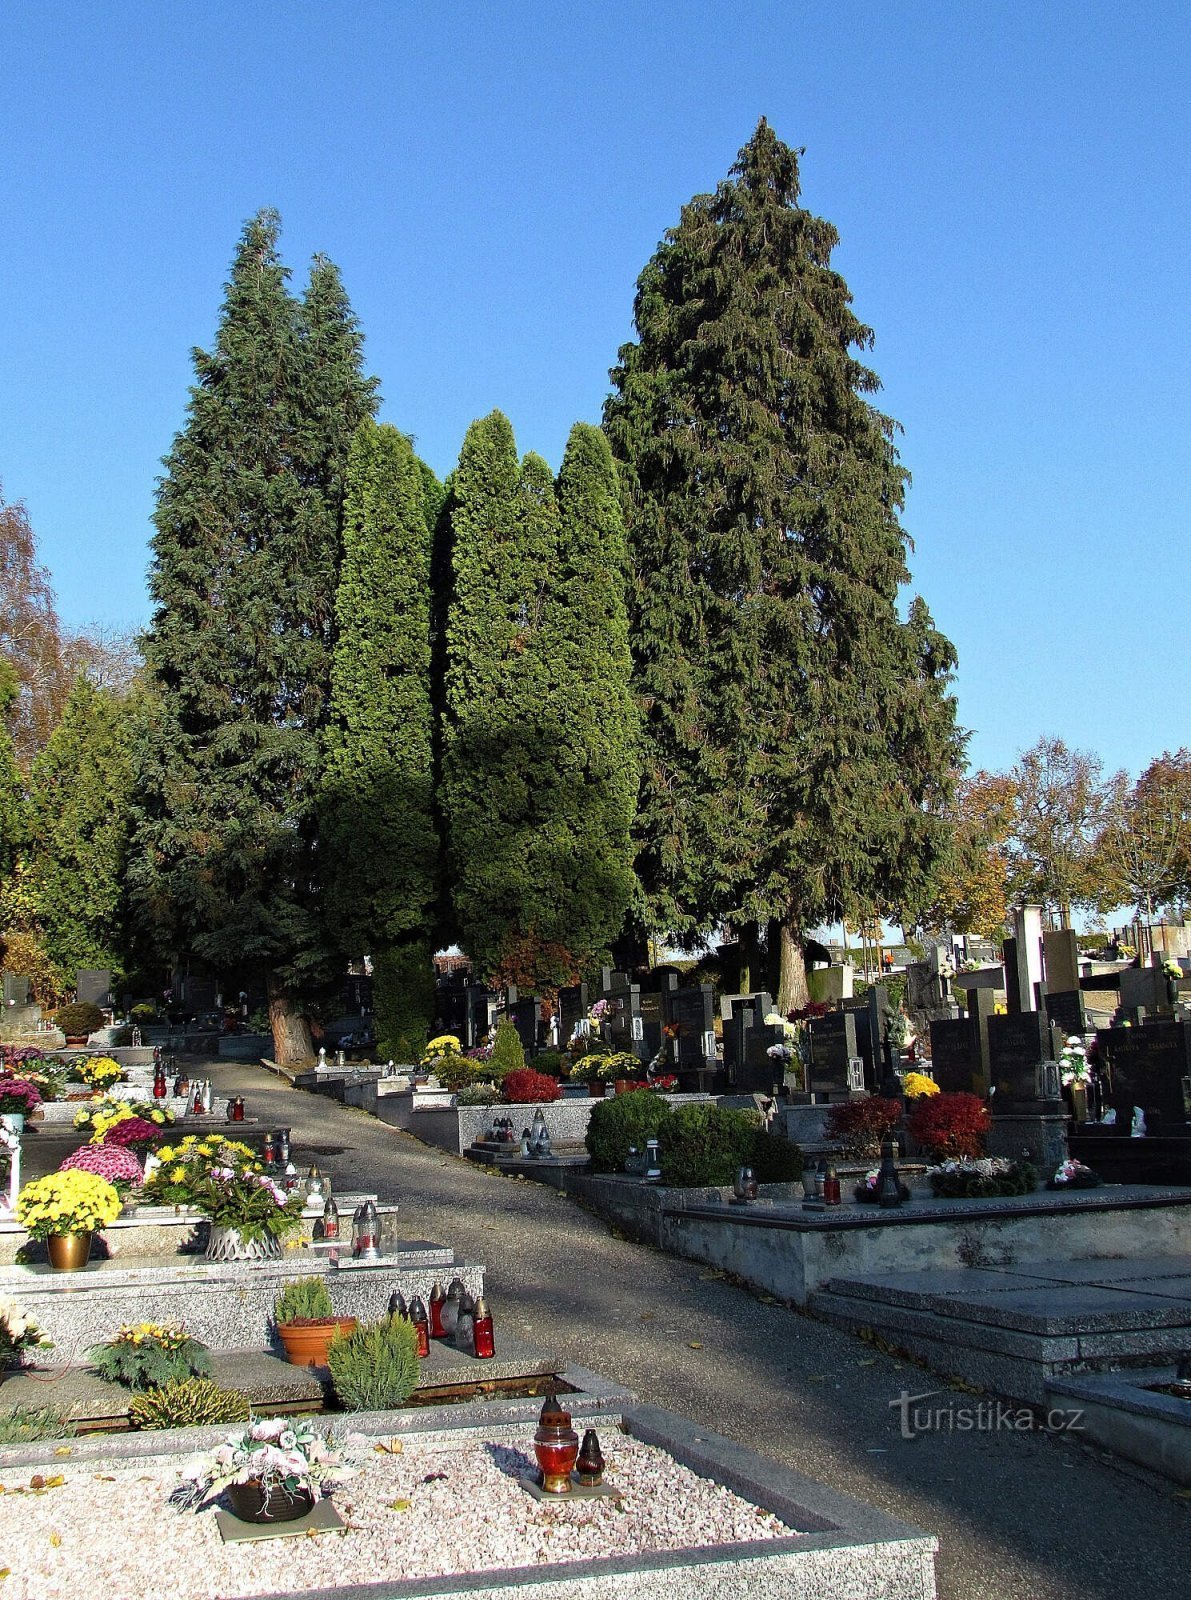 Cimitirul Slavičín și Memorialul aviatorilor americani